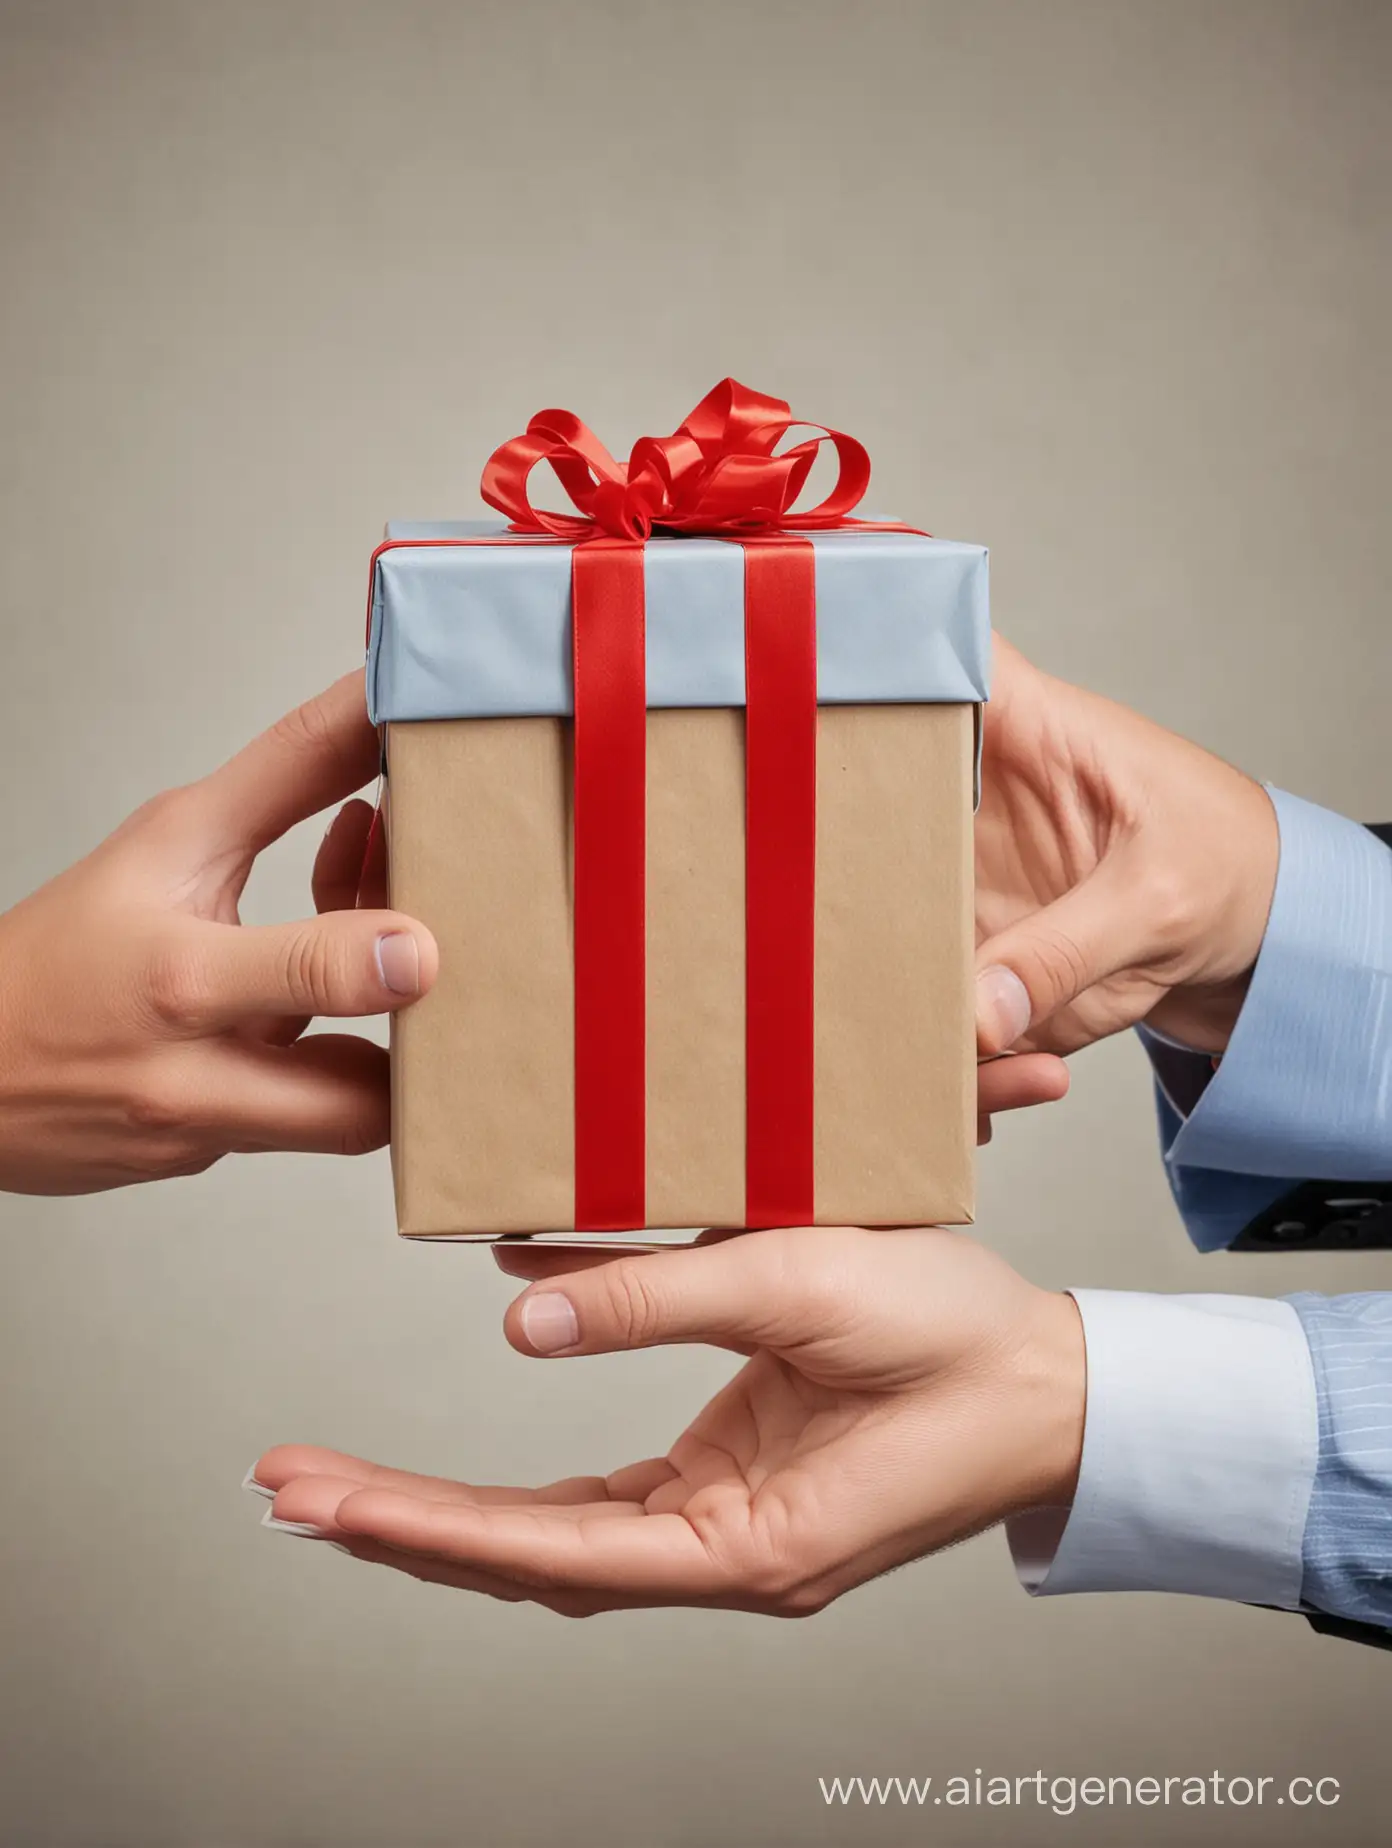 Подарки в профессиональной сфере – это подарки коллегам, руководителю, подчиненному, деловому партнеру и т.д. 